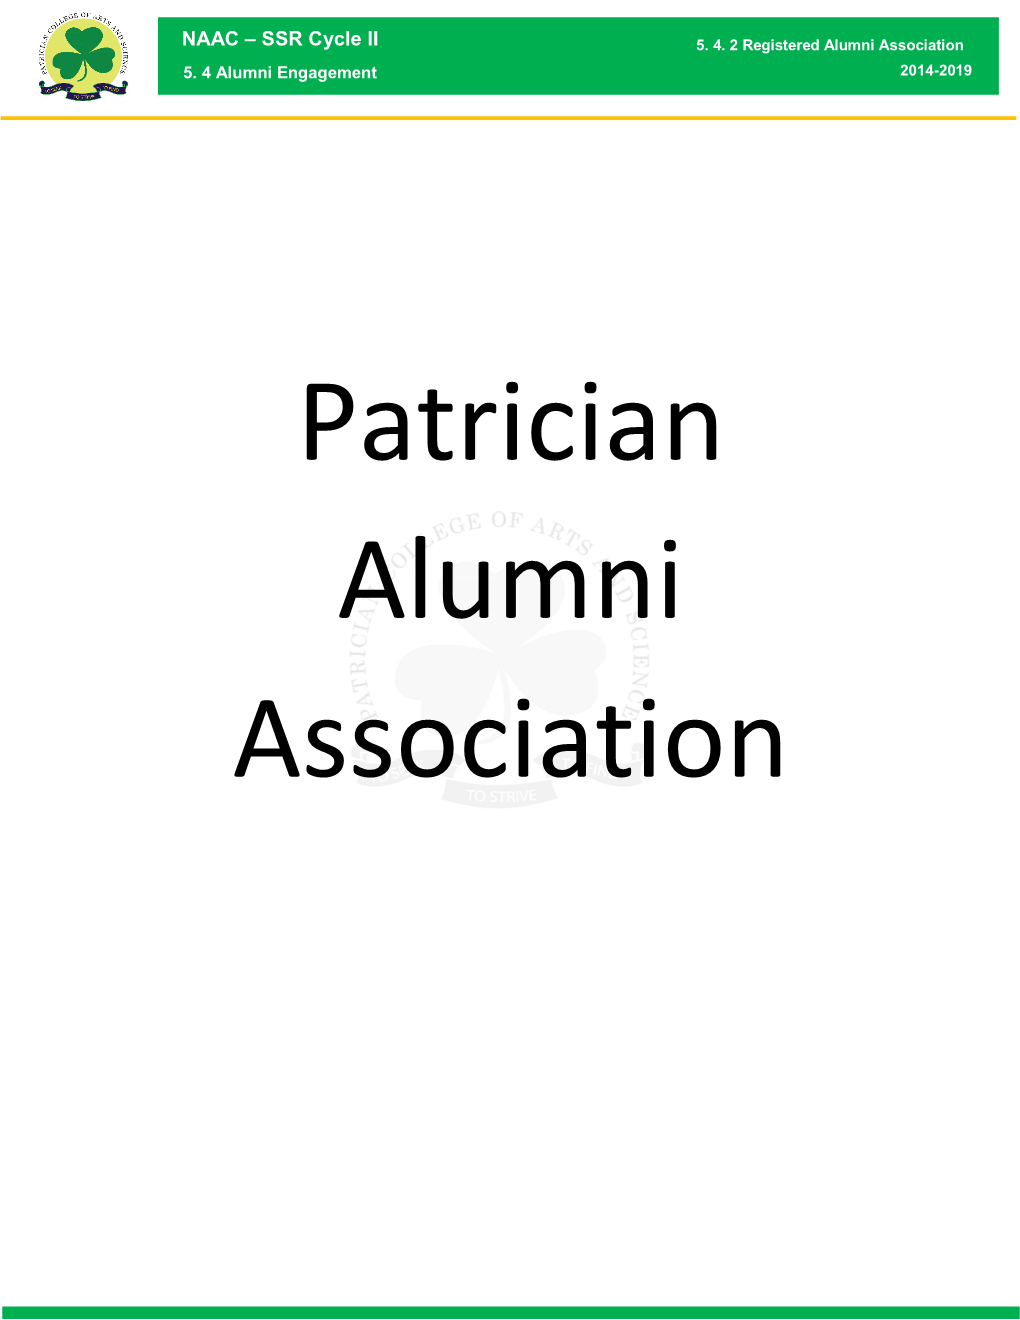 Alumni Association Registration